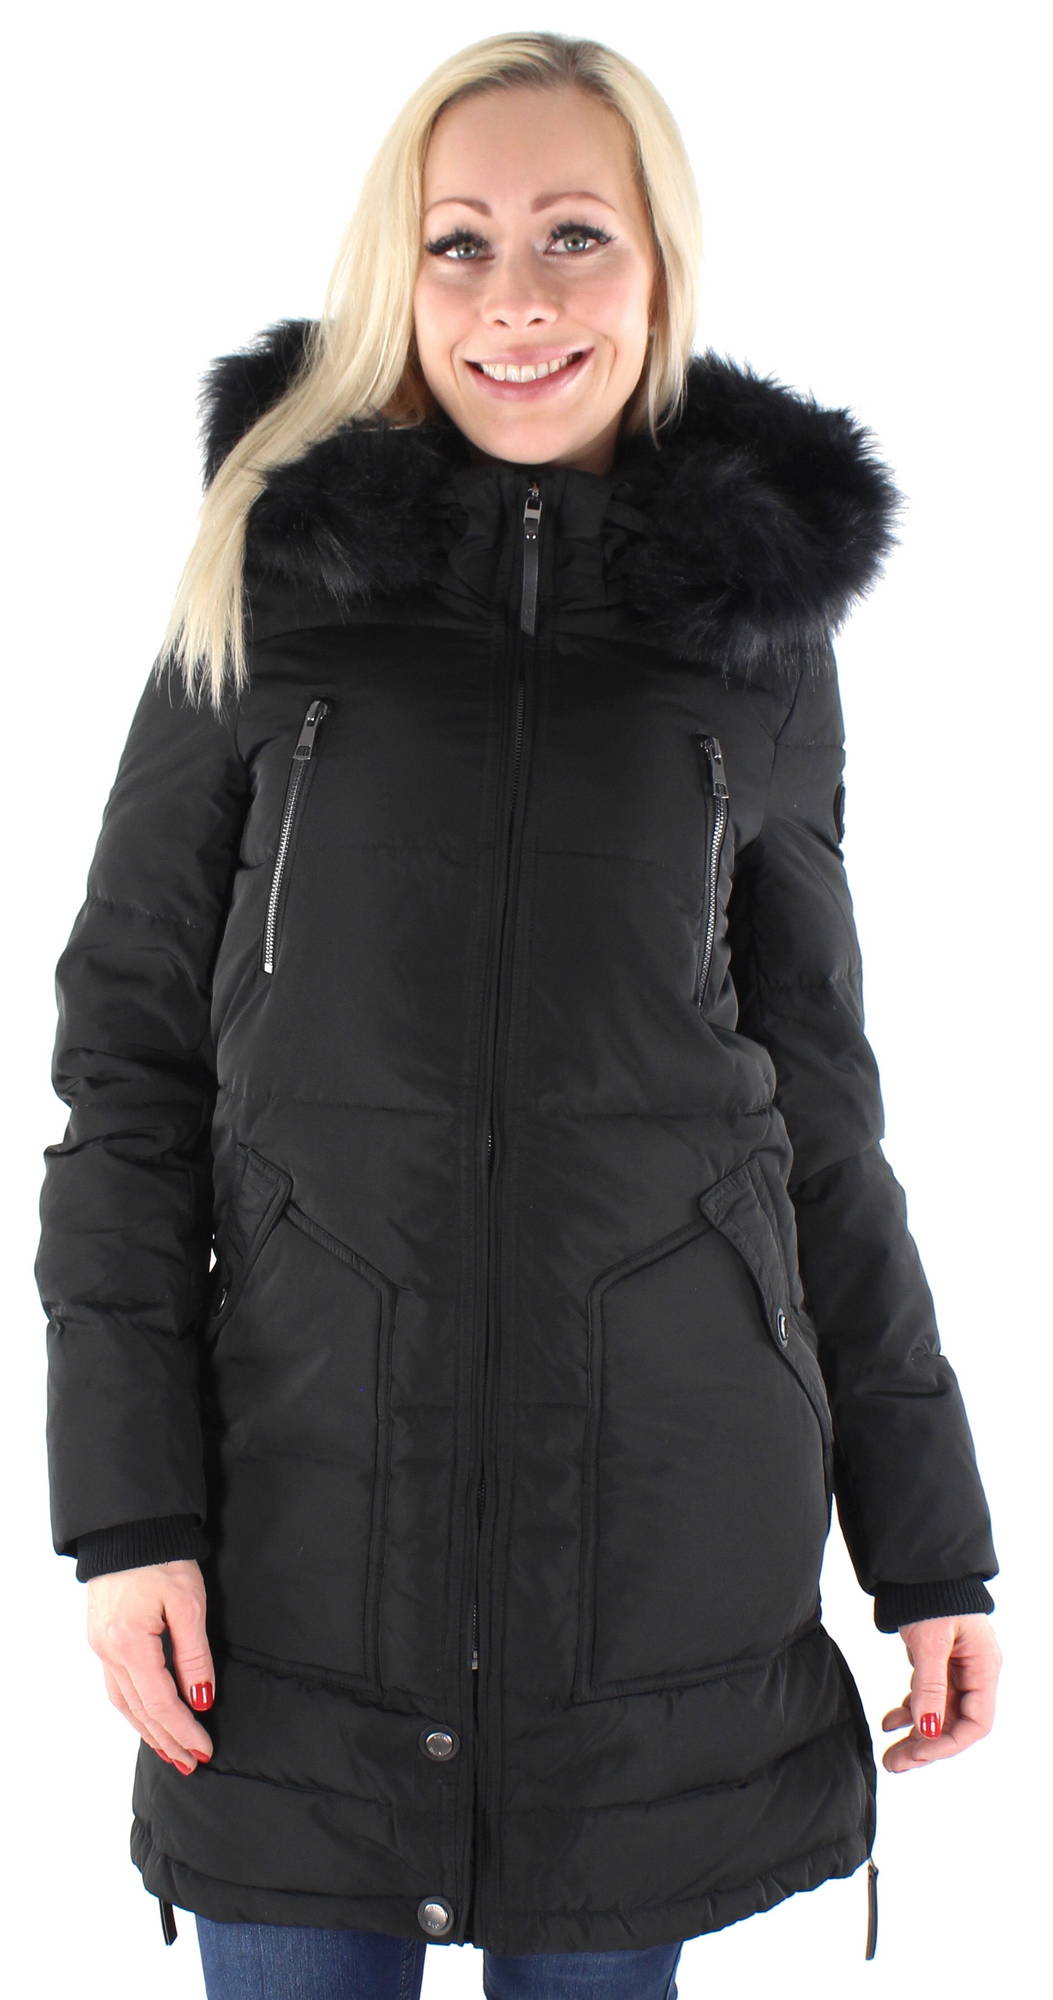 Rhoda Winter Coat